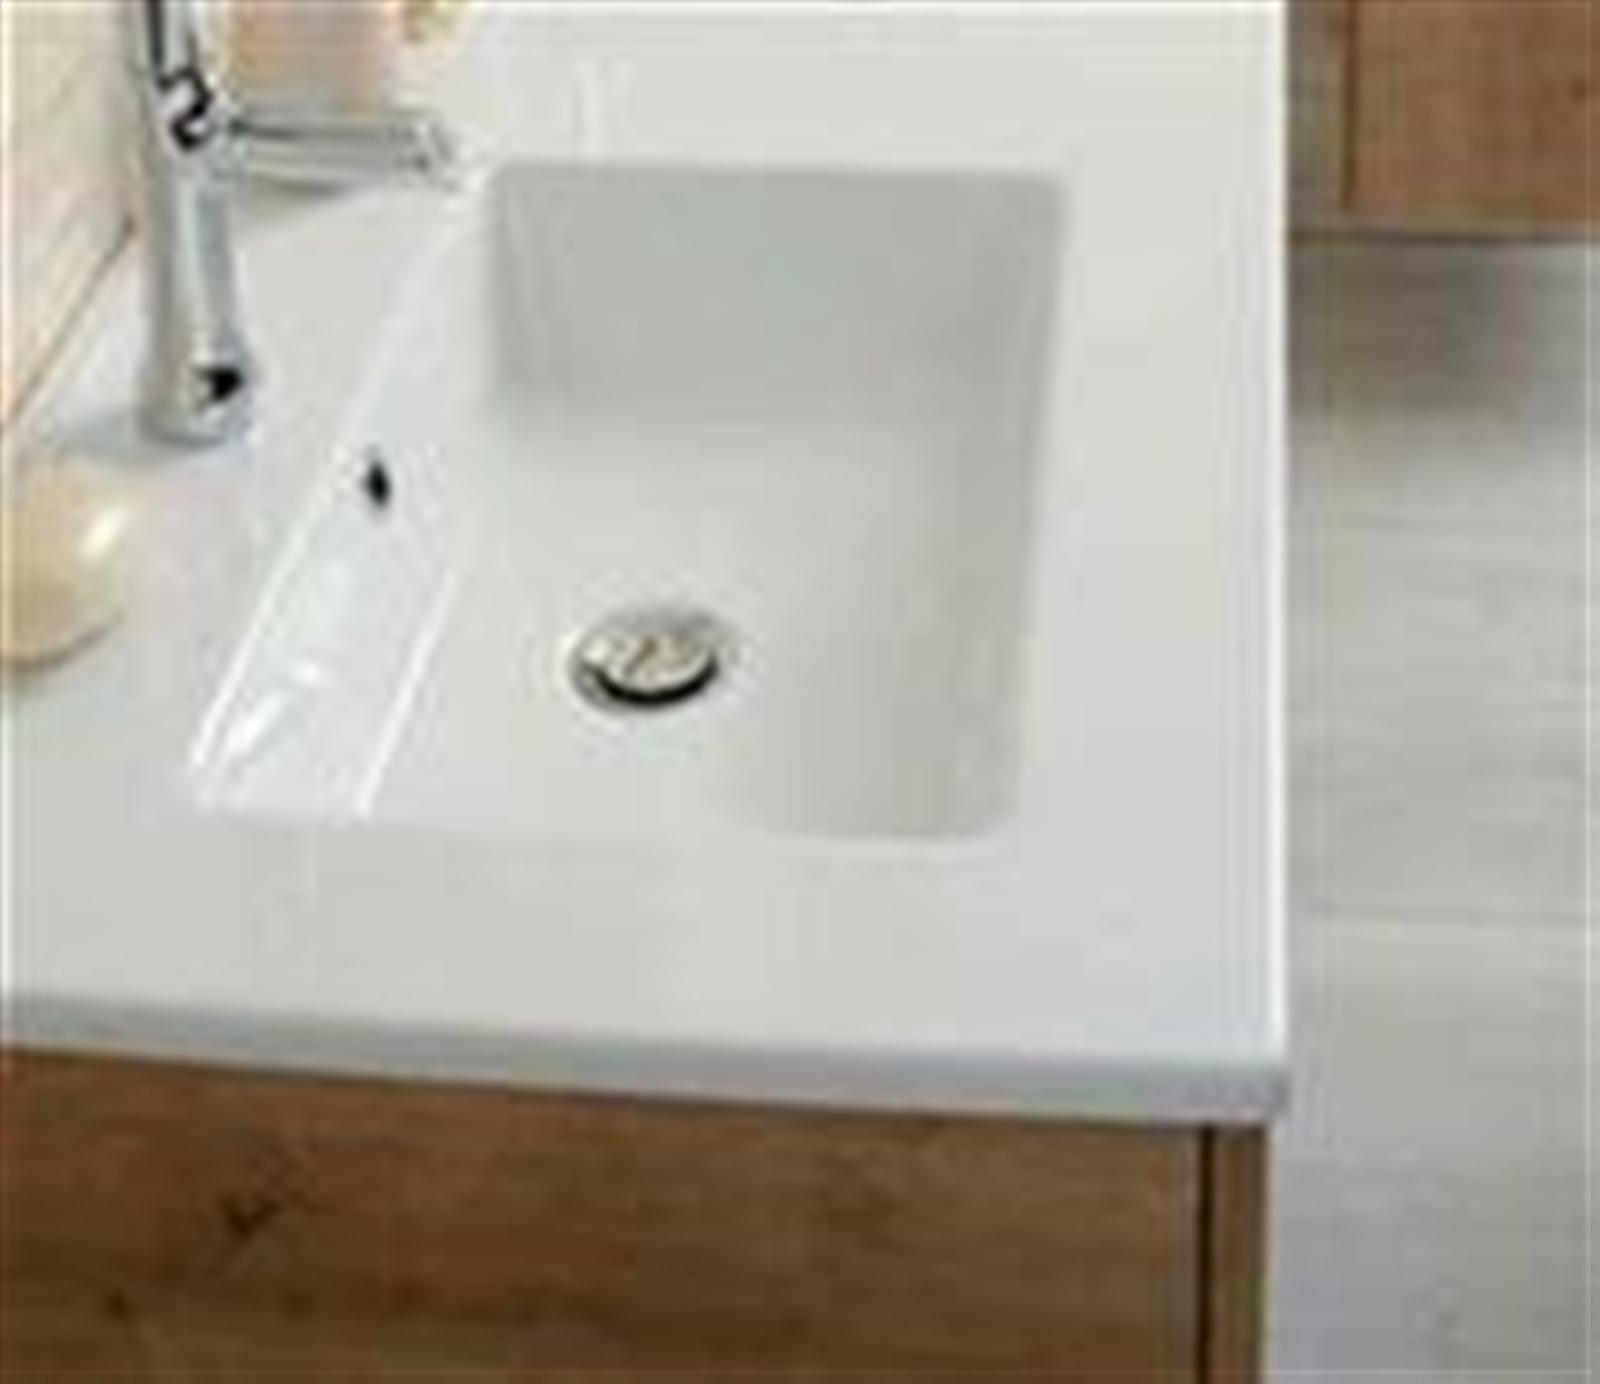 Plan-vasque céramique blanc - Longueur :101 cm - Profondeur : 46 ,5 cm - Epaisseur : 2,3 cm